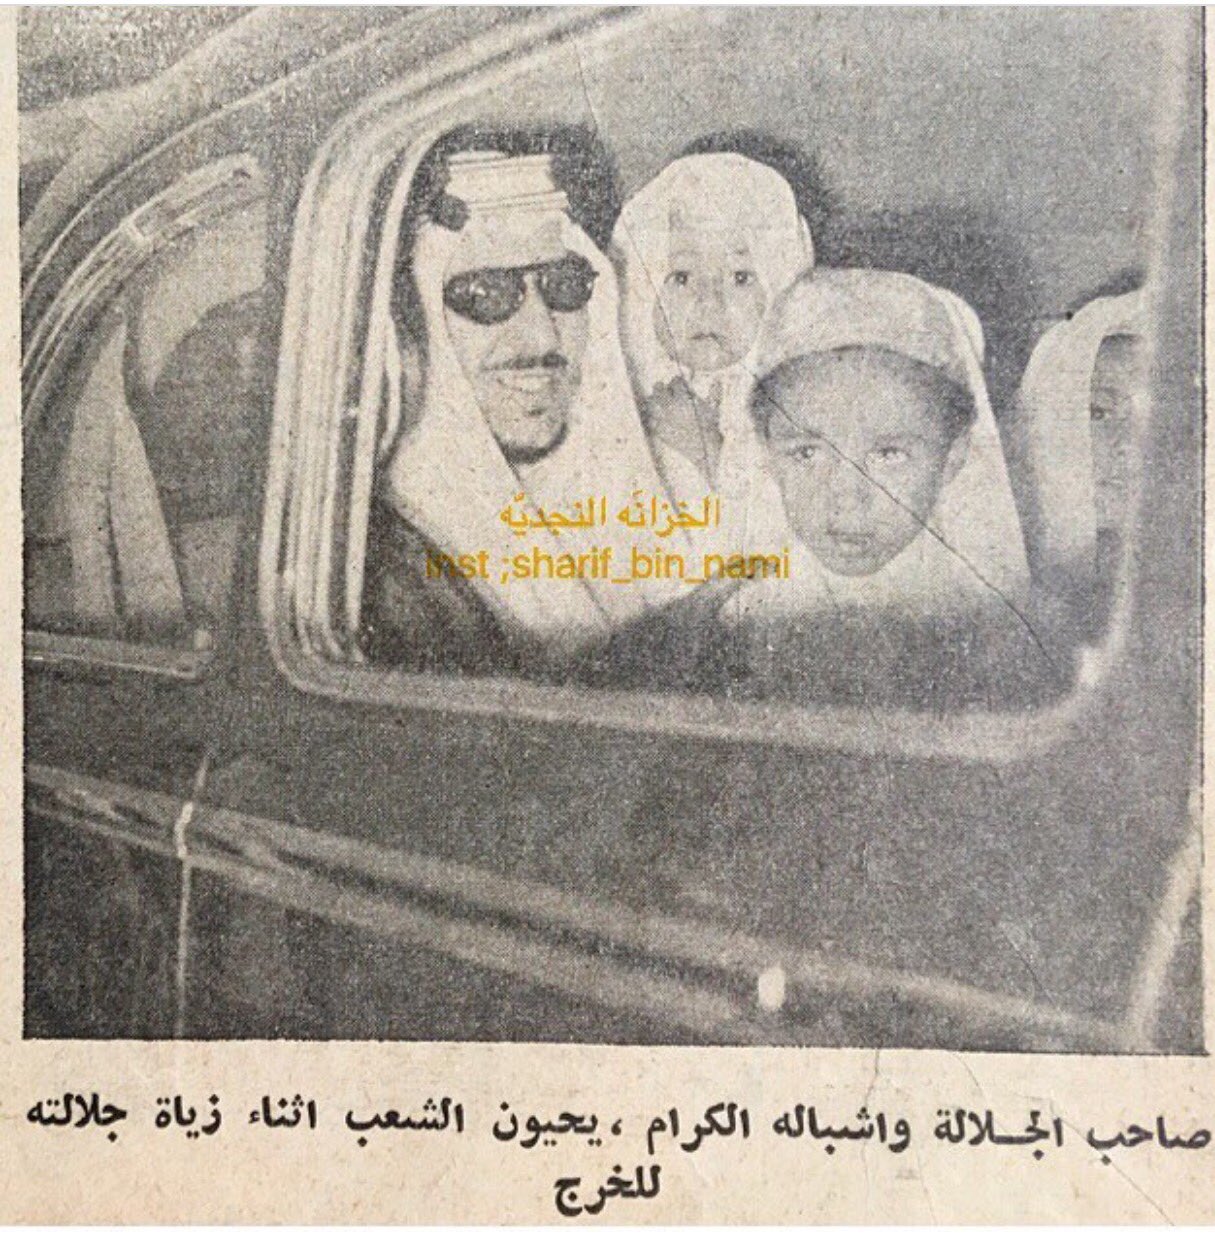 الملك سعود يصل الخرج لإفتتاح مصنع الذخيرة والسلاح، ومعه بالسيارة أبنائه تركي وعبدالإله ووليد ، ذو القعدة ١٣٧٣ .